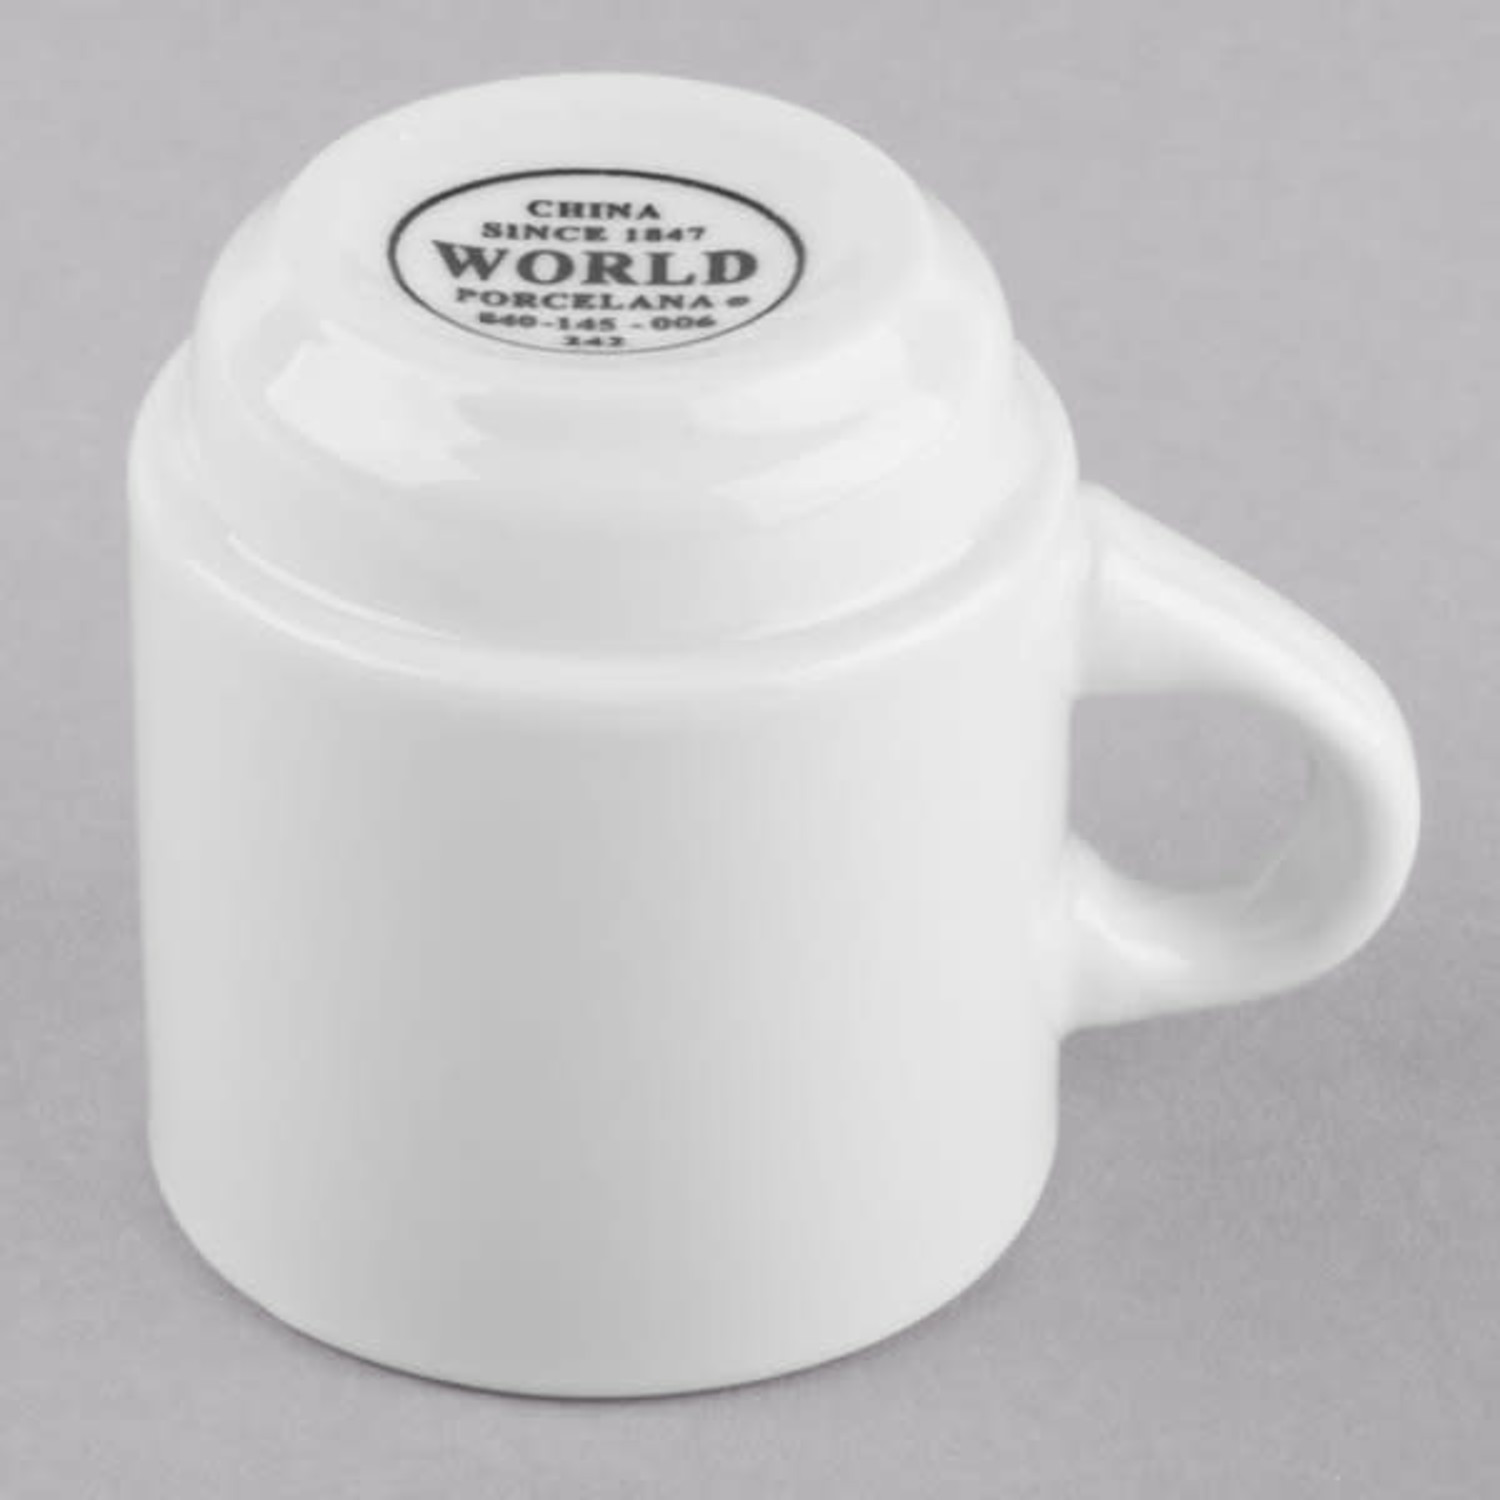 https://cdn.shoplightspeed.com/shops/633447/files/43581979/1500x4000x3/white-espresso-cup-saucer.jpg